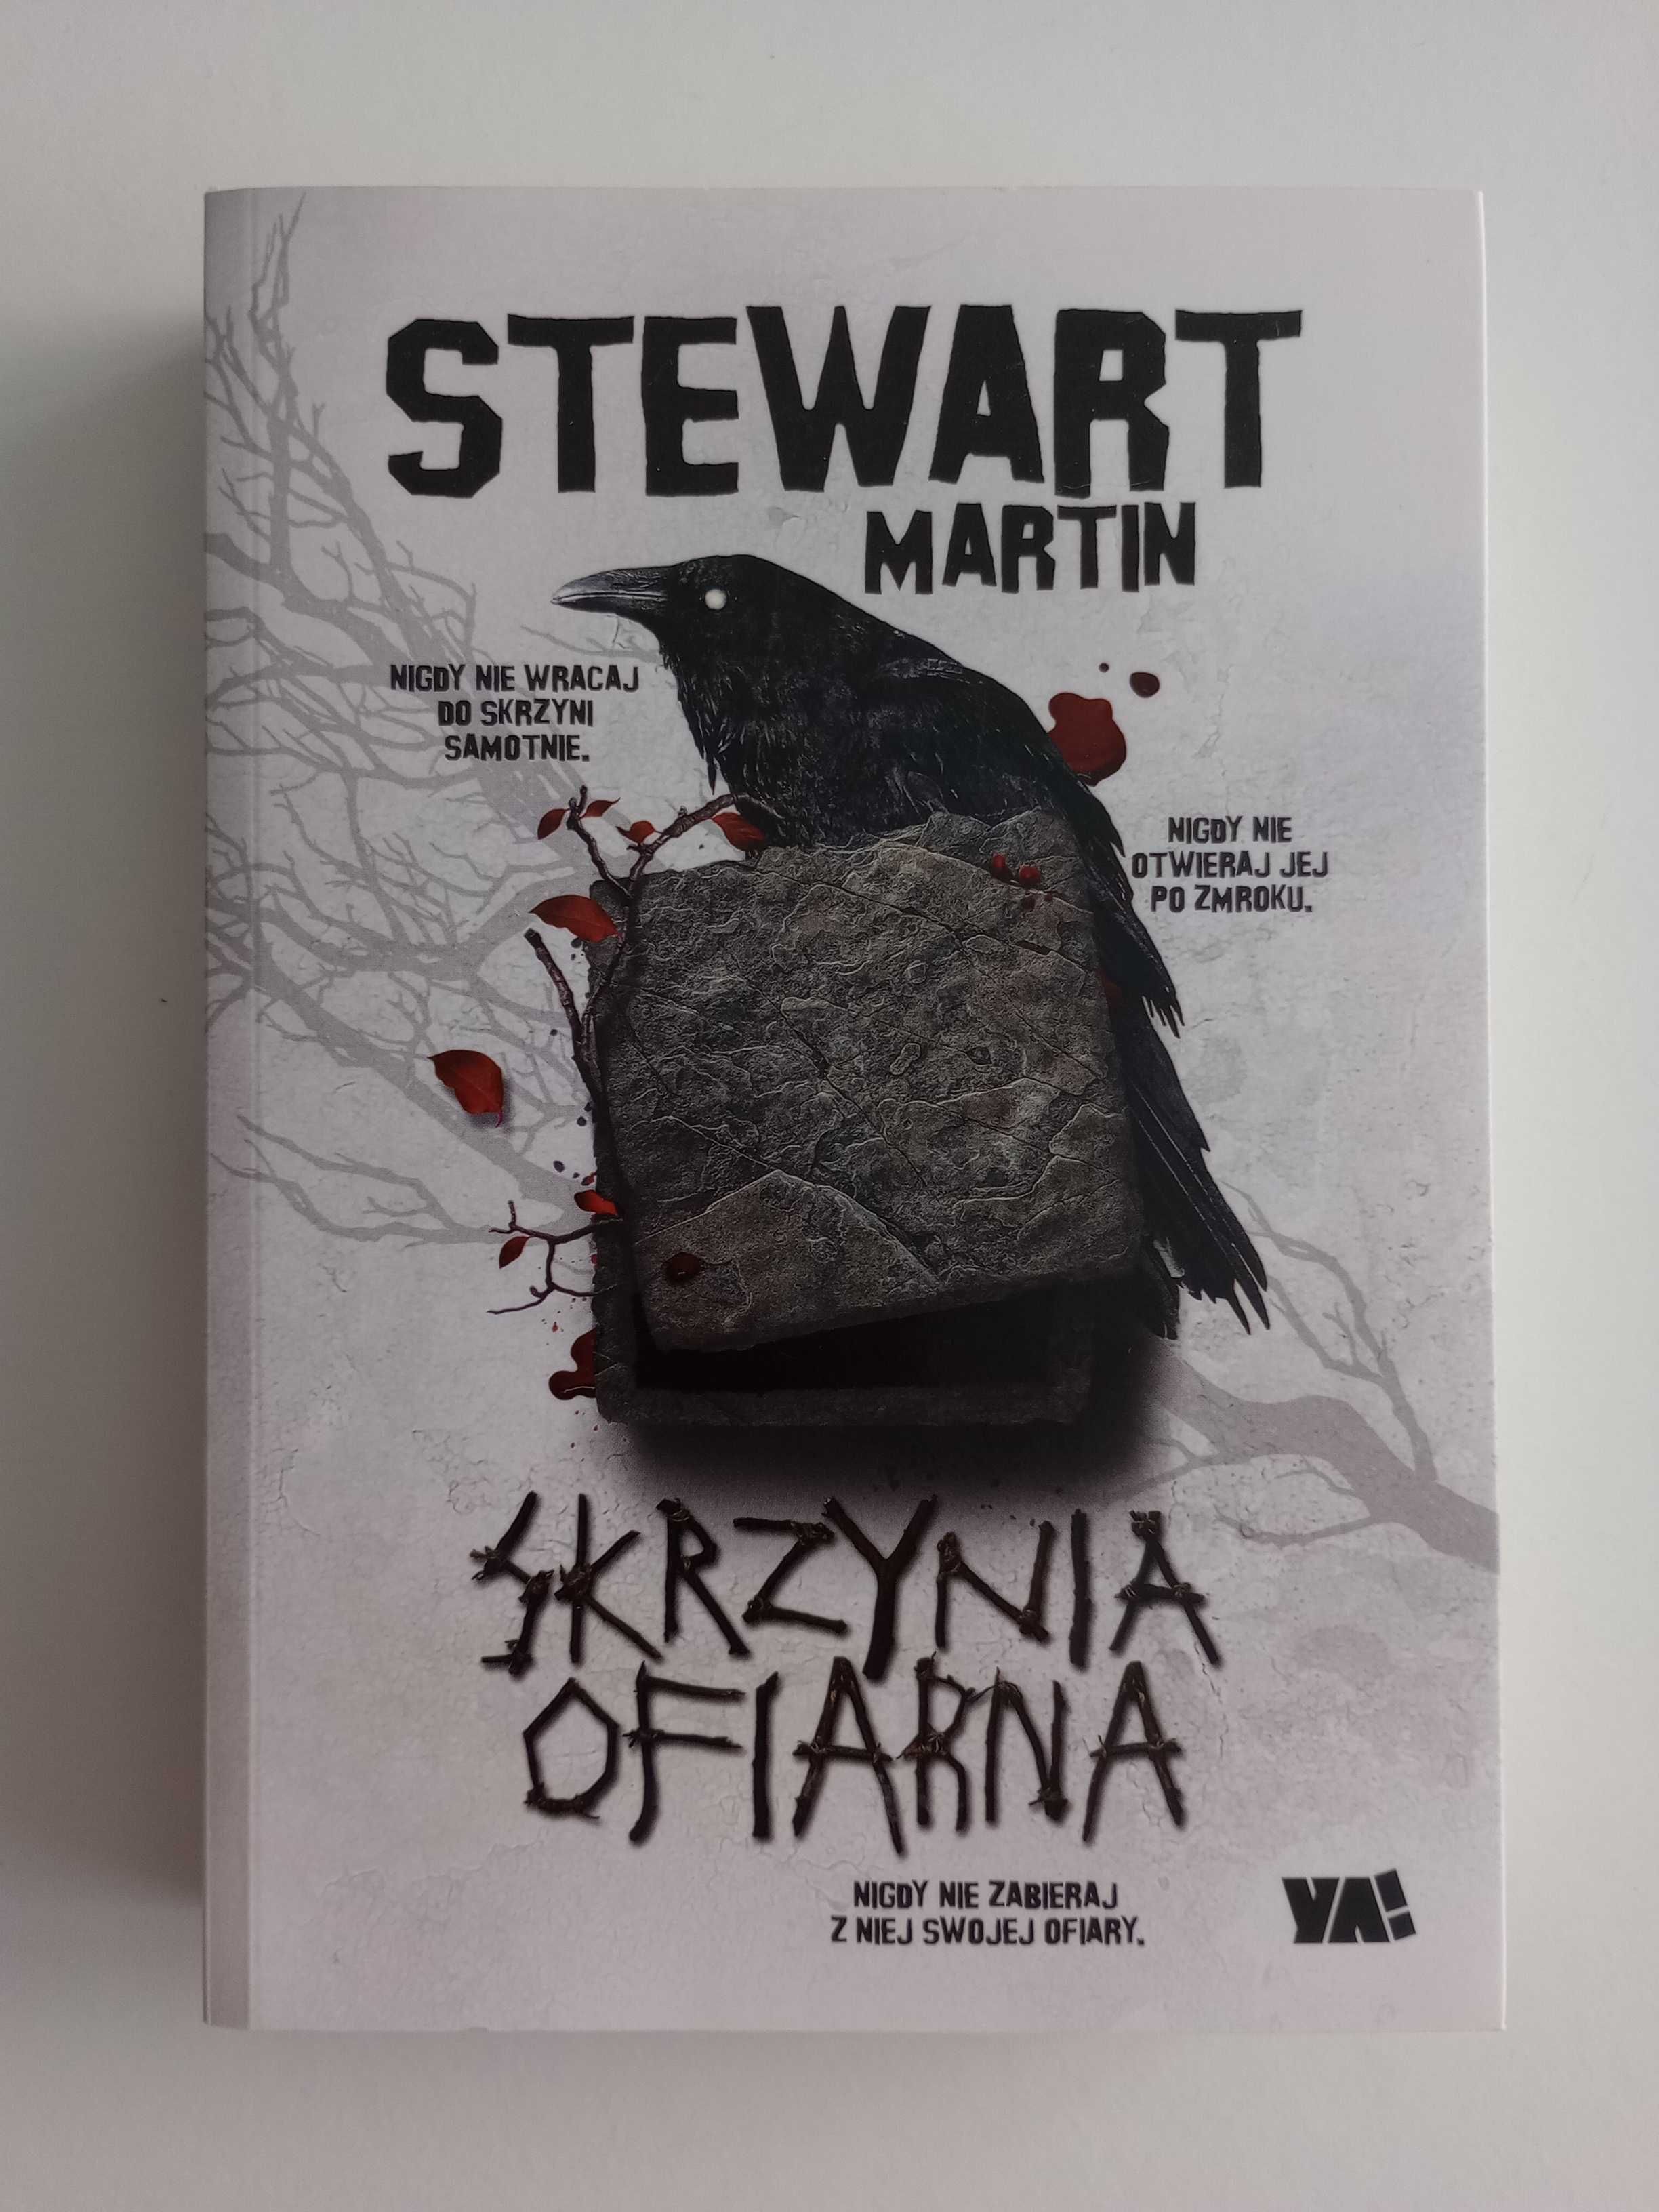 Skrzynia ofiarna Stewart Martin